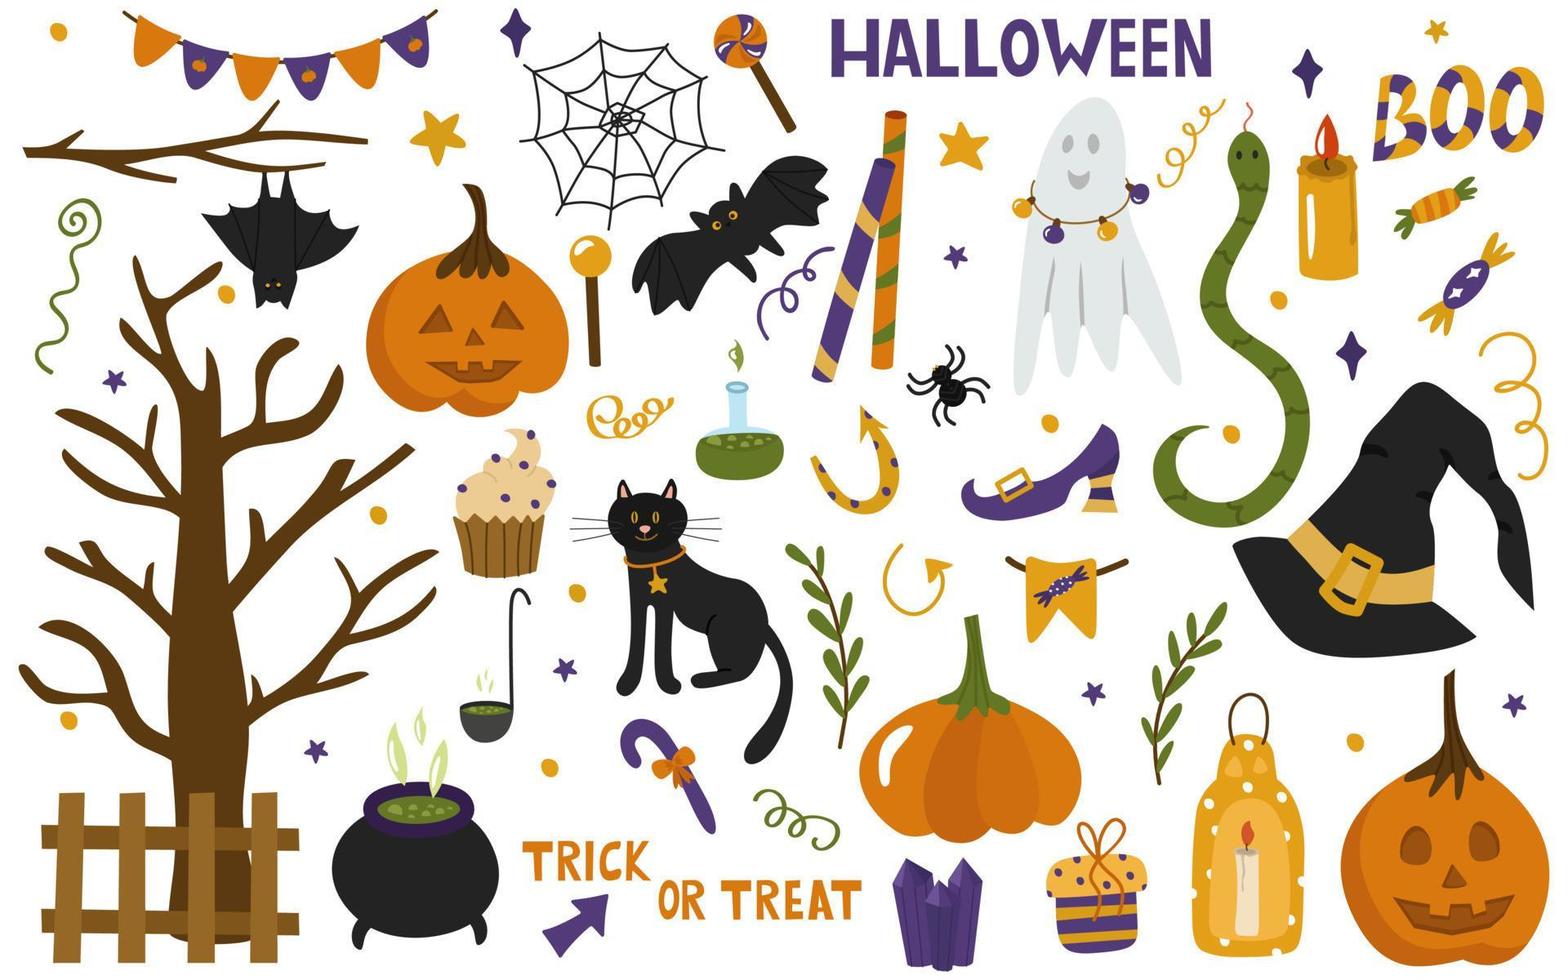 halloween es un conjunto de símbolos tradicionales para una fiesta. calabaza, murciélago, inscripciones, serpiente, gorra de bruja, gato, dulces, caramelos, piruleta. colección de vectores de ilustraciones en estilo de dibujos animados, imágenes prediseñadas